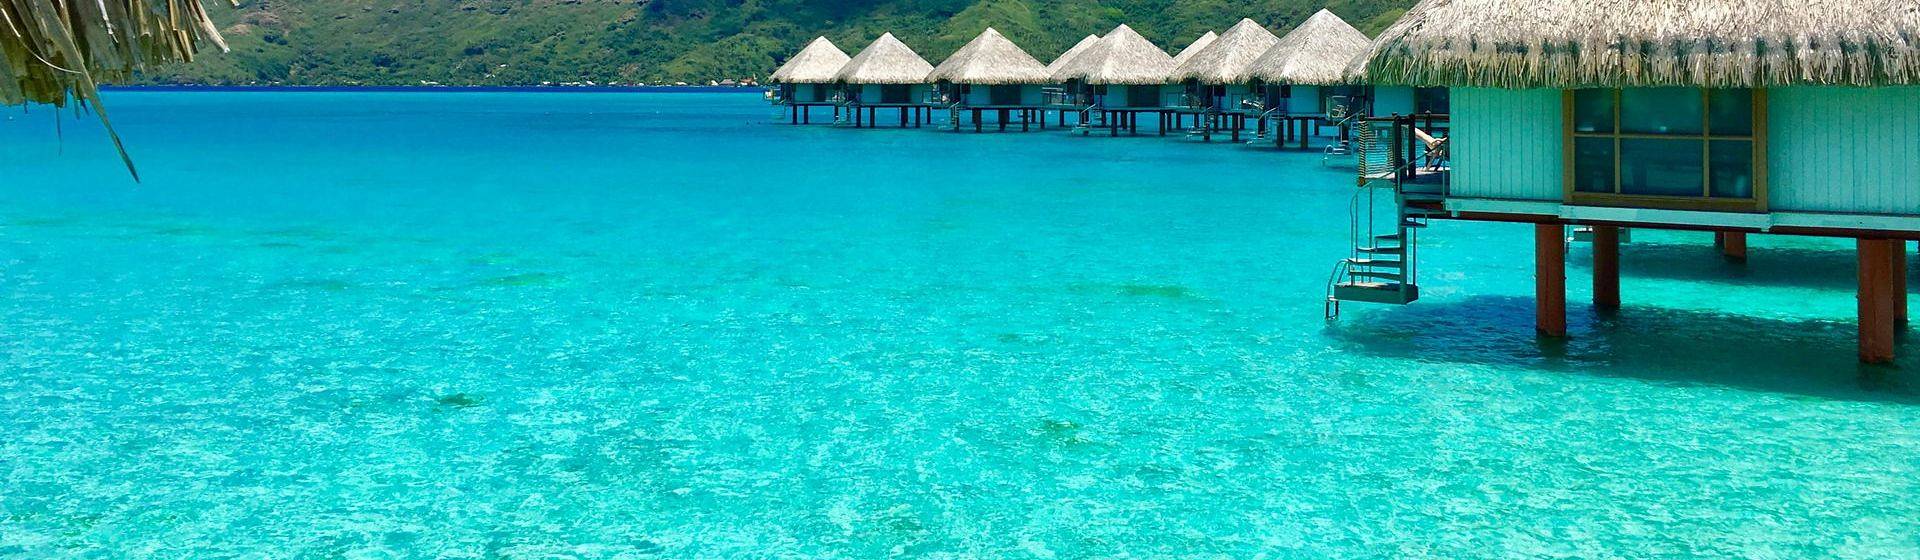 Holidays to Bora Bora Image